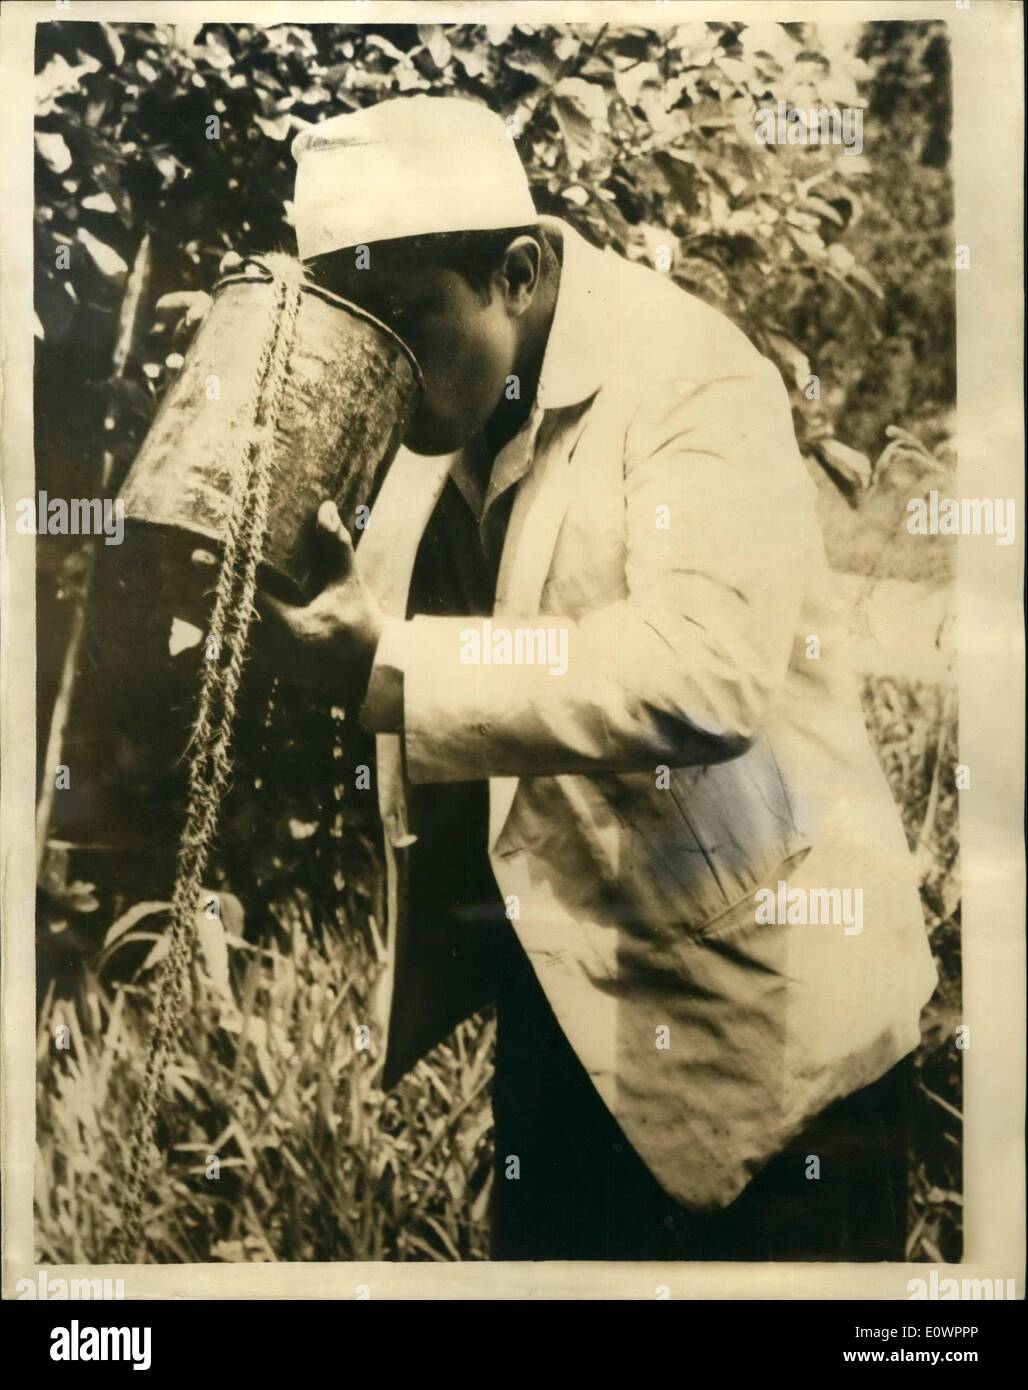 11 novembre 1963 - Le sultan des boissons dans un seau. Seyyid Jamshid Bin Abdullah, le jeune nouveau Sultan de Zanzibar, a récemment conduit une partie des 500 sur son passe-temps favori, une expédition de chasse de porcs sauvages, dans la forêt de Jozani, à environ 20 milles de la ville de Zanzibar. Le Sultan est un bon coup et a tué jusqu'à 75 porcs dans un seul voyage. C'était son premier voyage tat il a été capable de faire depuis la mort de son père. Photo montre :- Au cours d'un voyage dans la forêt, le parti, dont le Sultan, leur soif étanchée en abaissant un seau dans un puits et l'eau potable Banque D'Images